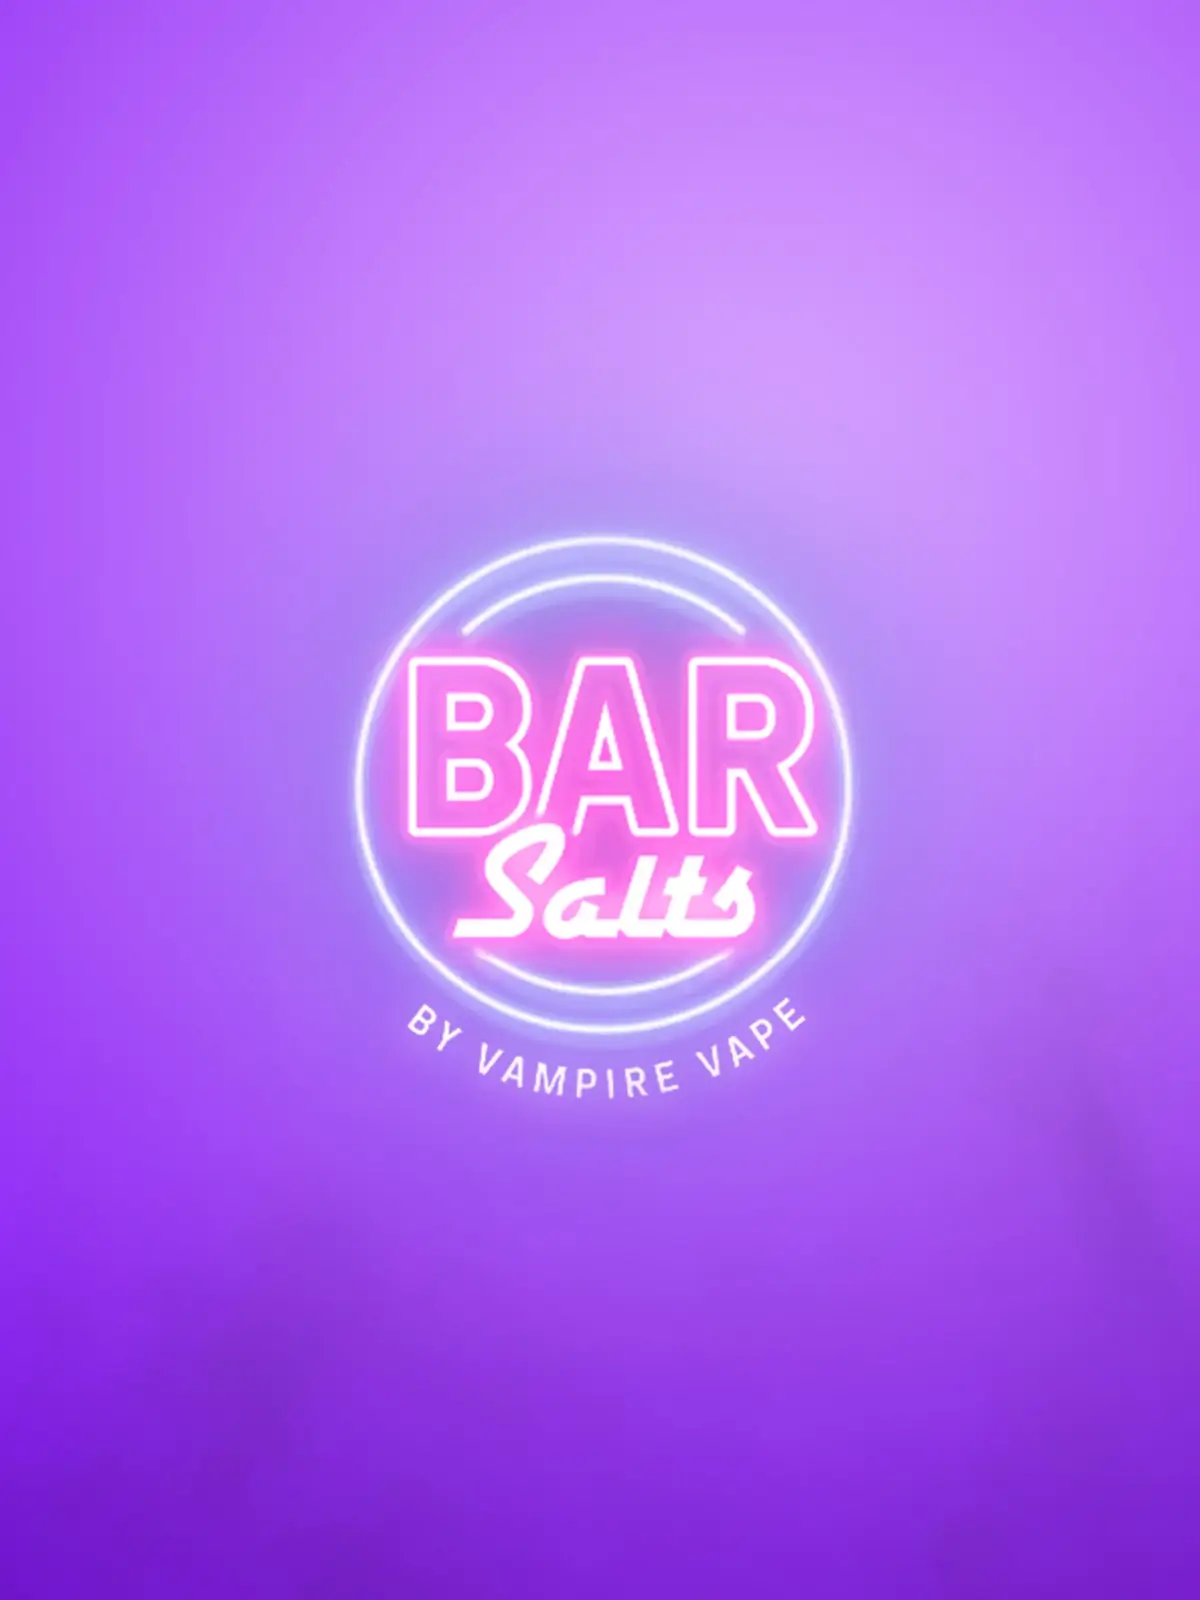 Vampire Vape Bar Salts Logo